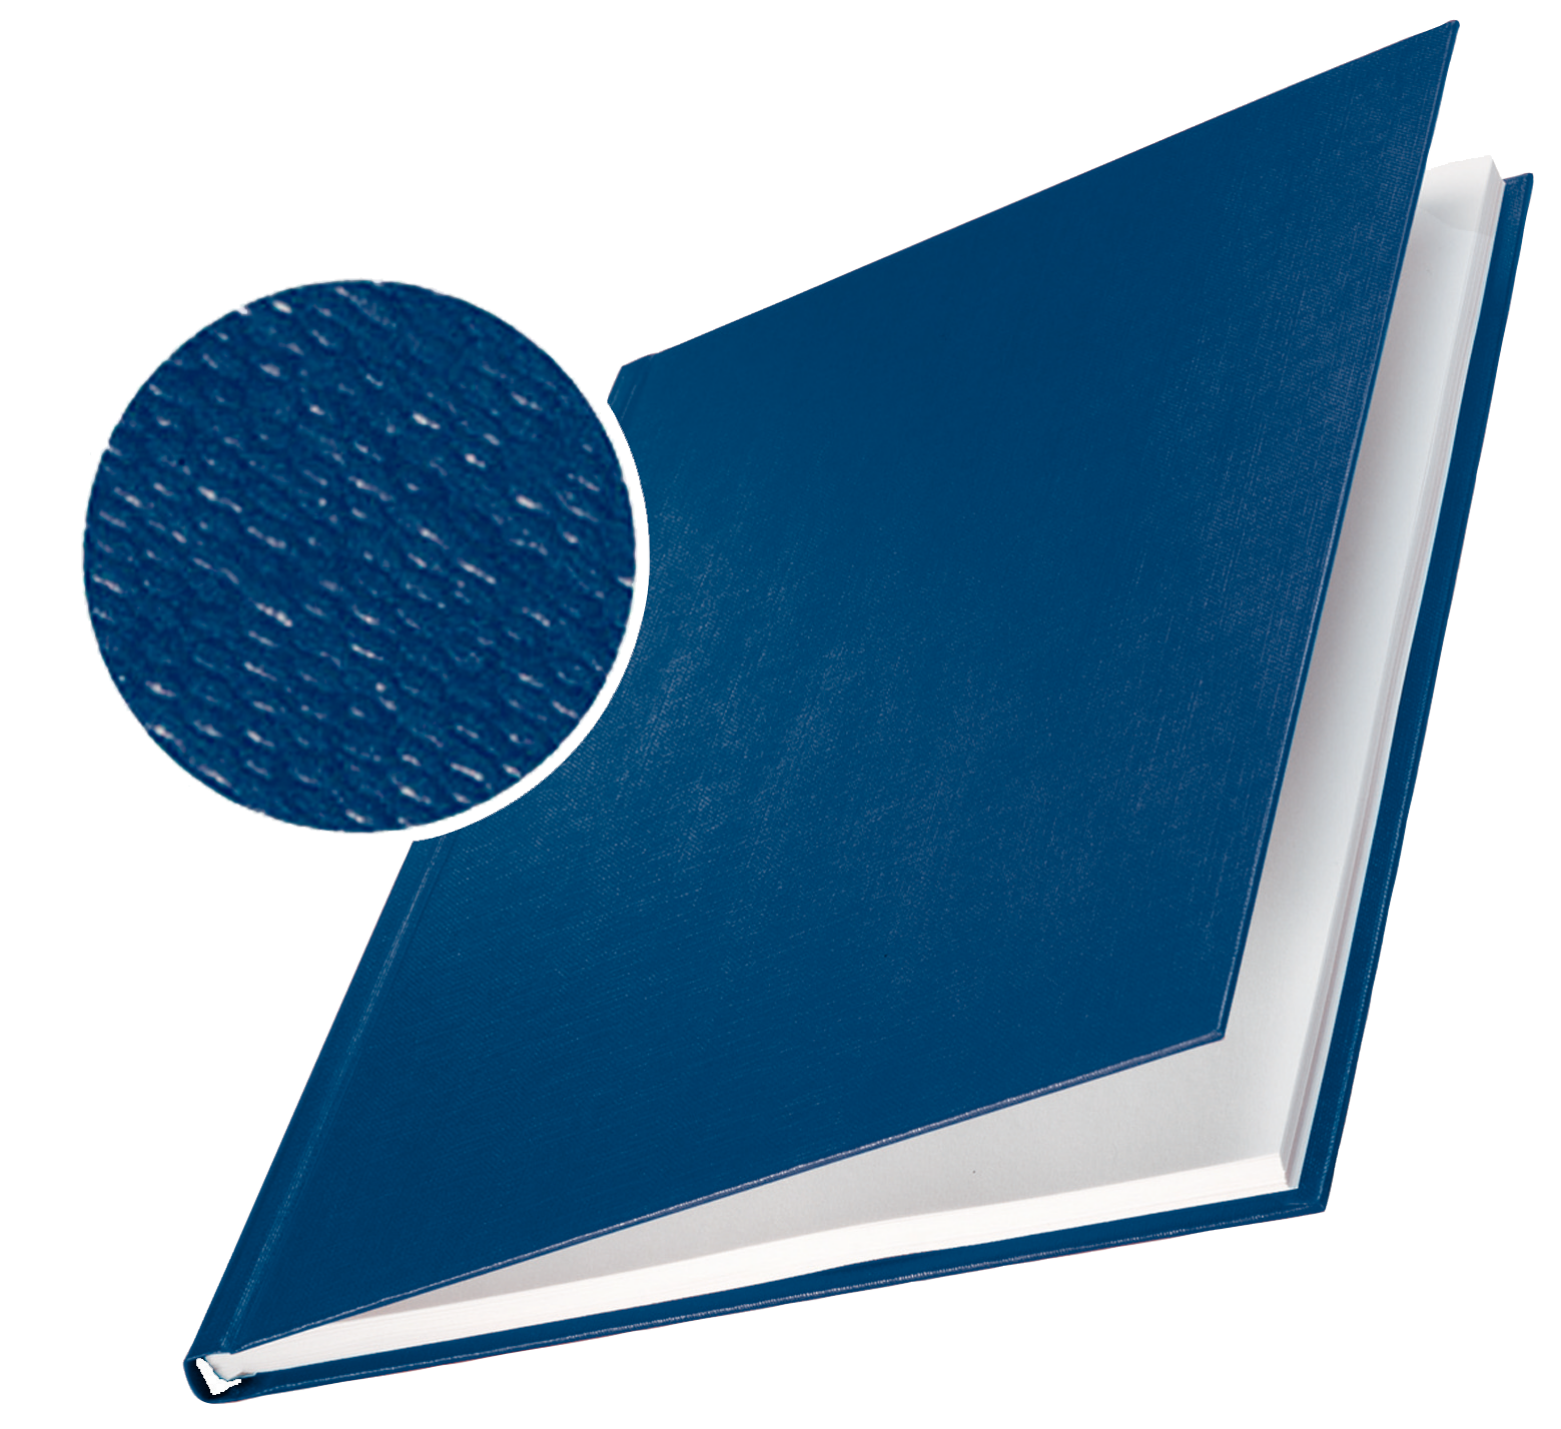 Tvrdé desky Leitz impressBIND, 71 - 105 listů, modré, balení 10 ks